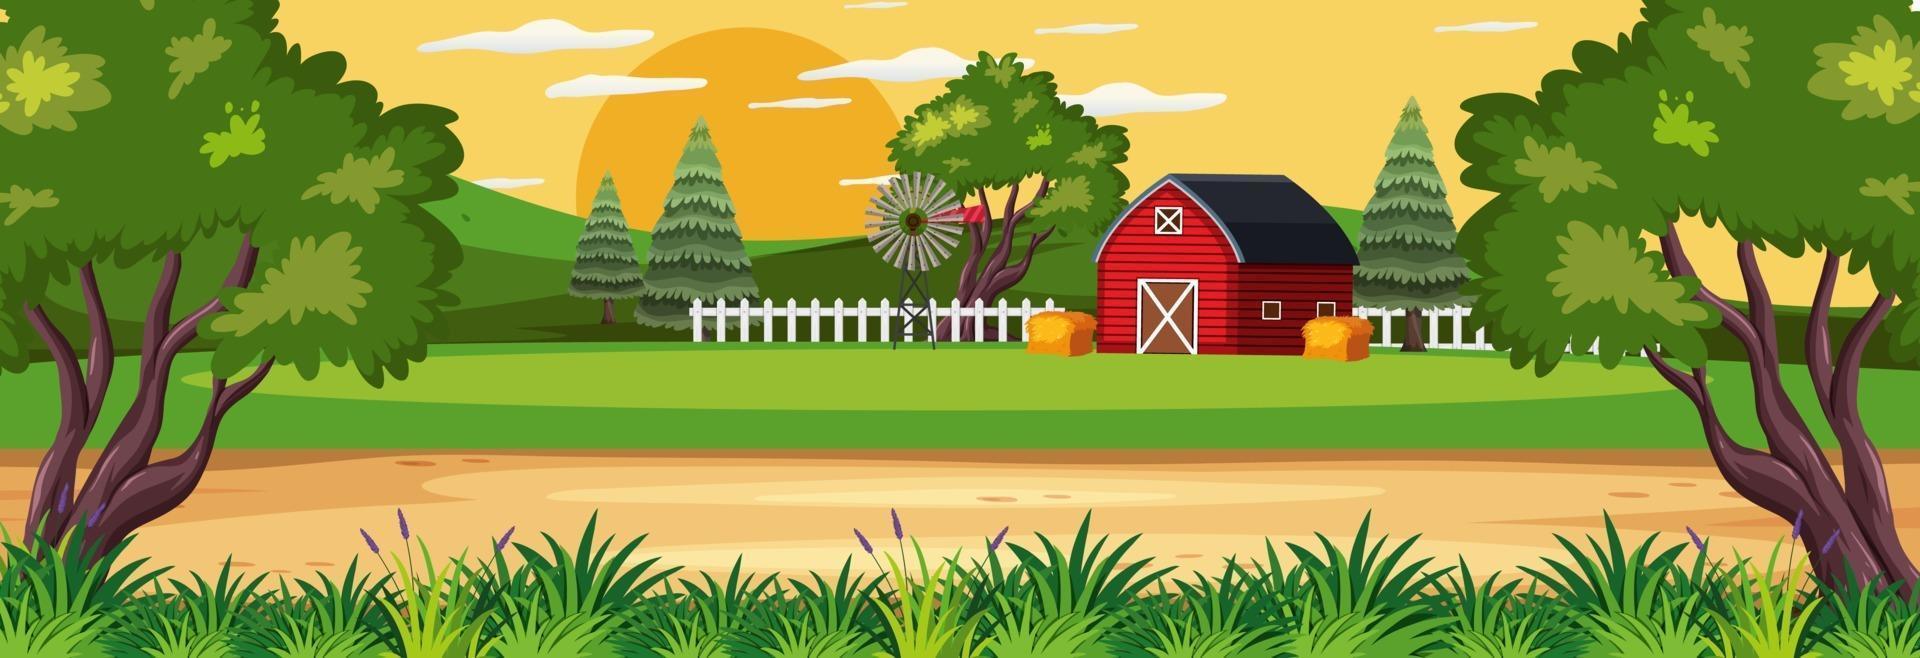 scène de paysage horizontal de ferme avec grange rouge vecteur